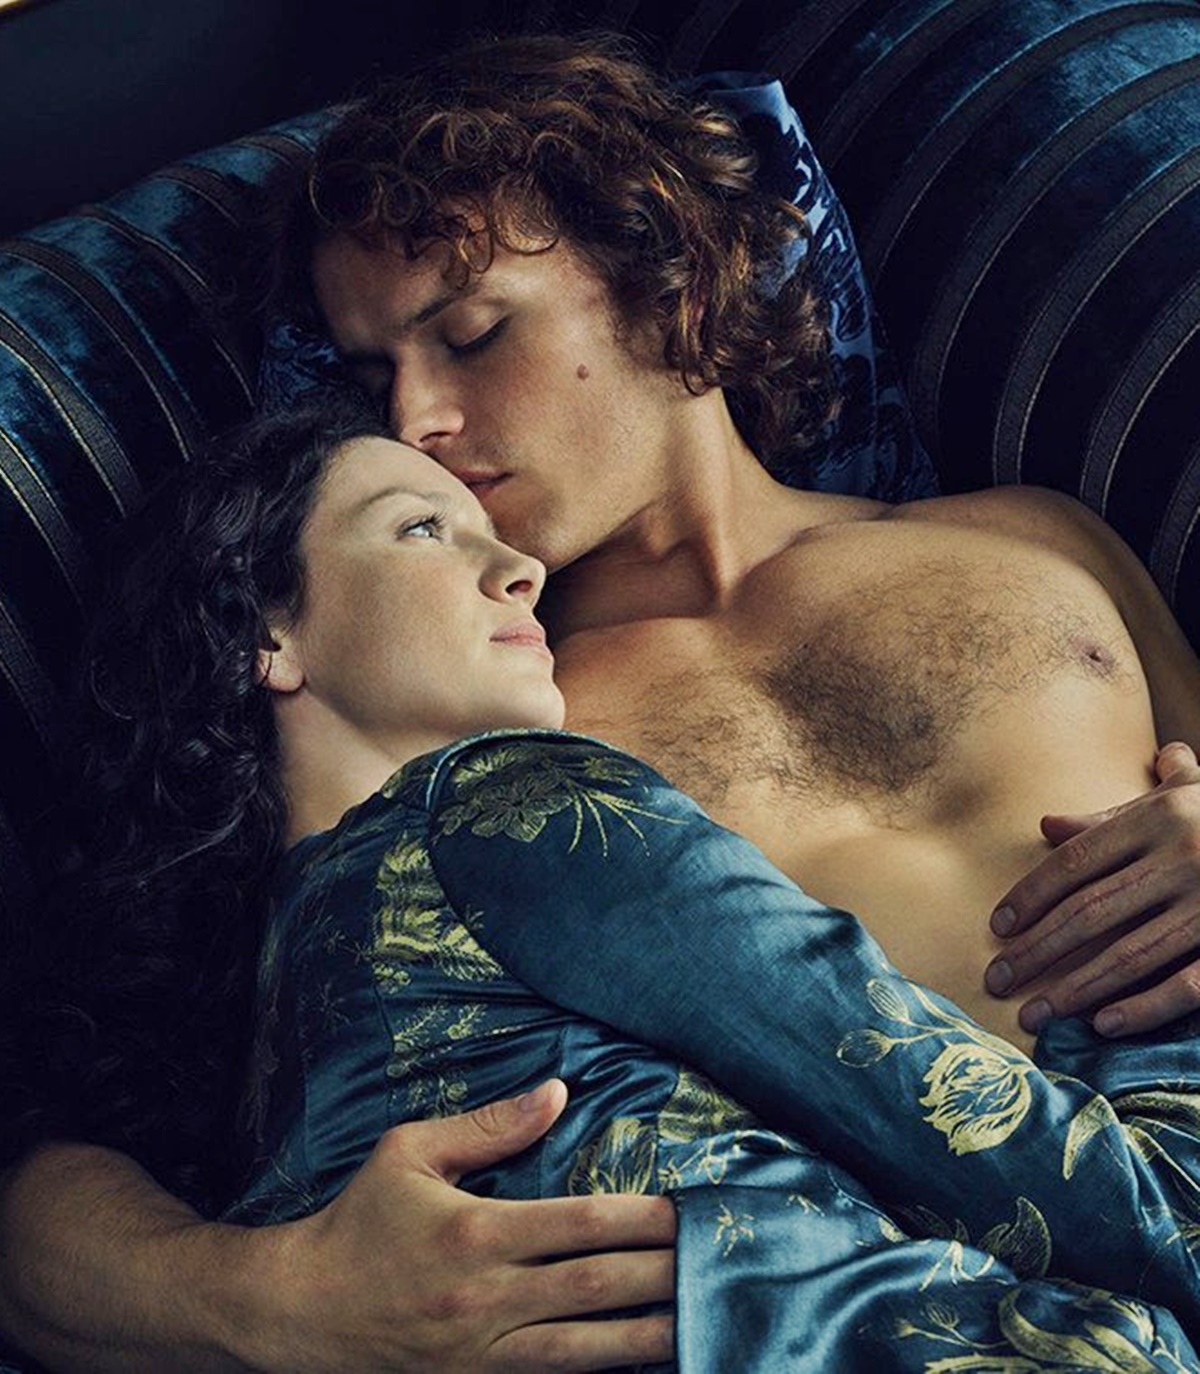 Az Outlander sztárja borzasztóan kifakadt egy forgatási szexjelenet miatt - Sam Heughan